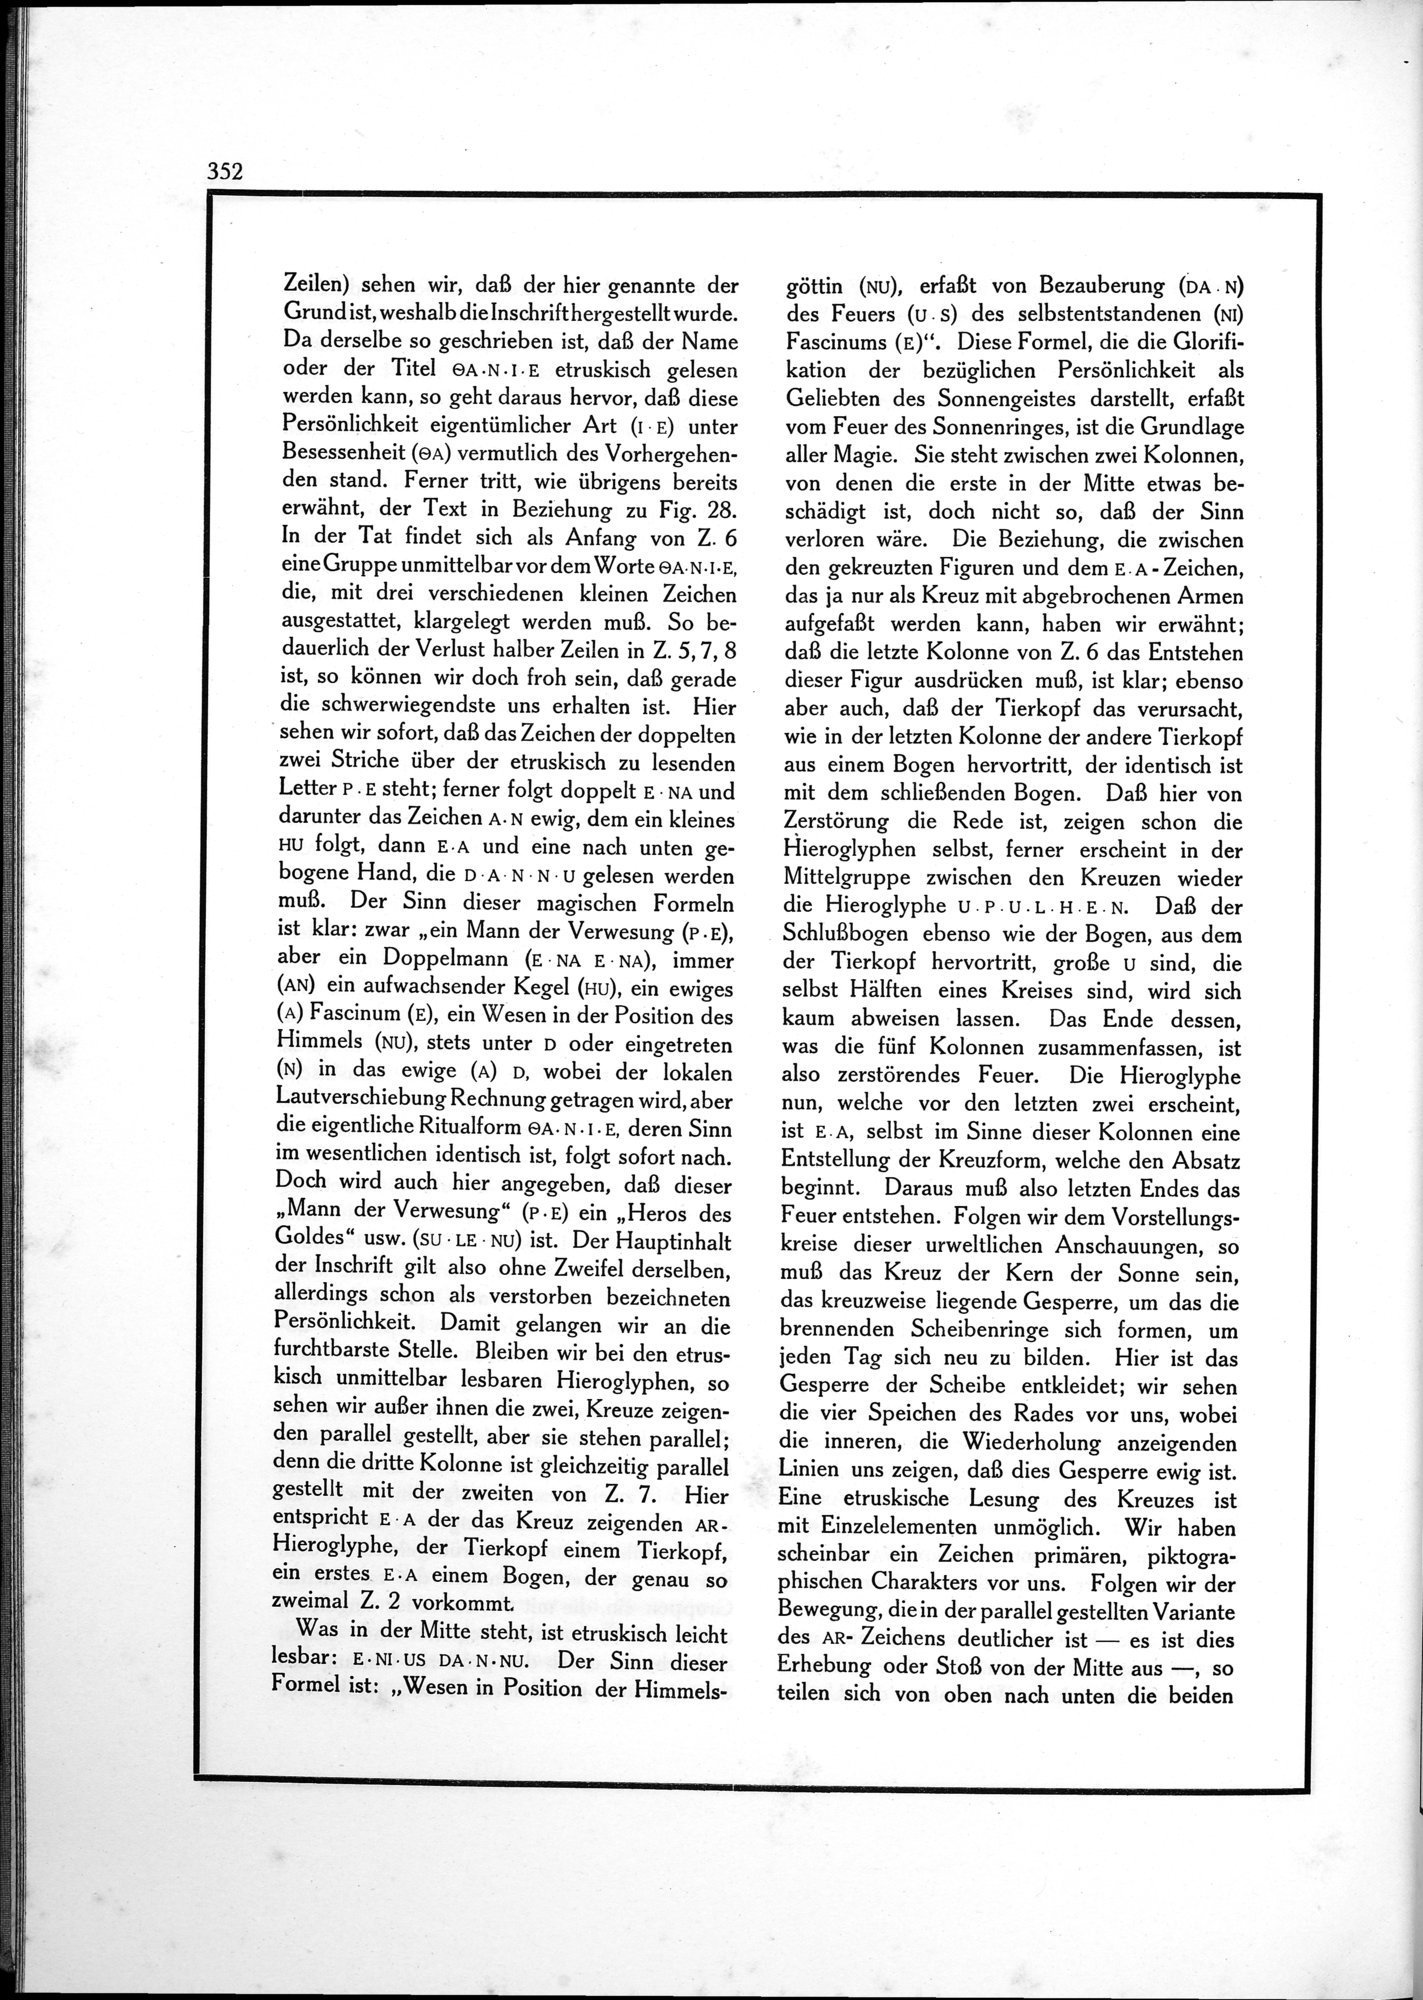 Die Teufel des Avesta und Ihre Beziehungen zur Ikonographie des Buddhismus Zentral-Asiens : vol.1 / Page 356 (Grayscale High Resolution Image)